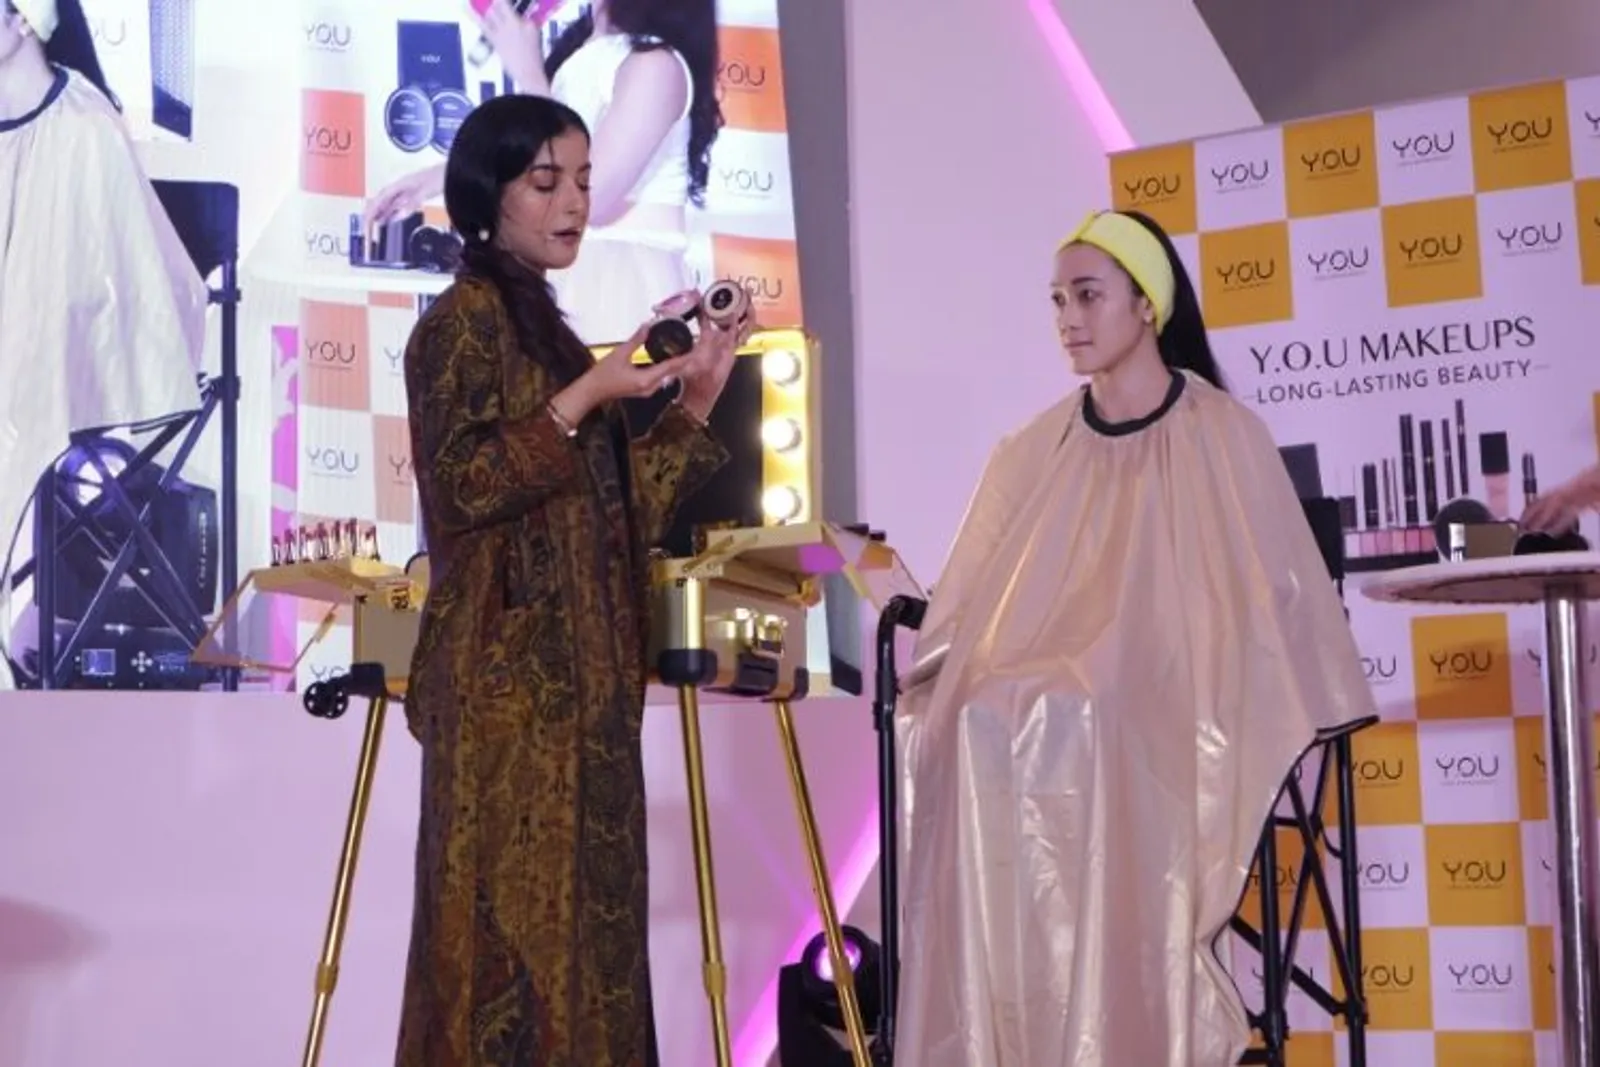 #BFA2019: Suka Duka Tasya Farasya Jadi Beauty Influencer di Tahun Ini